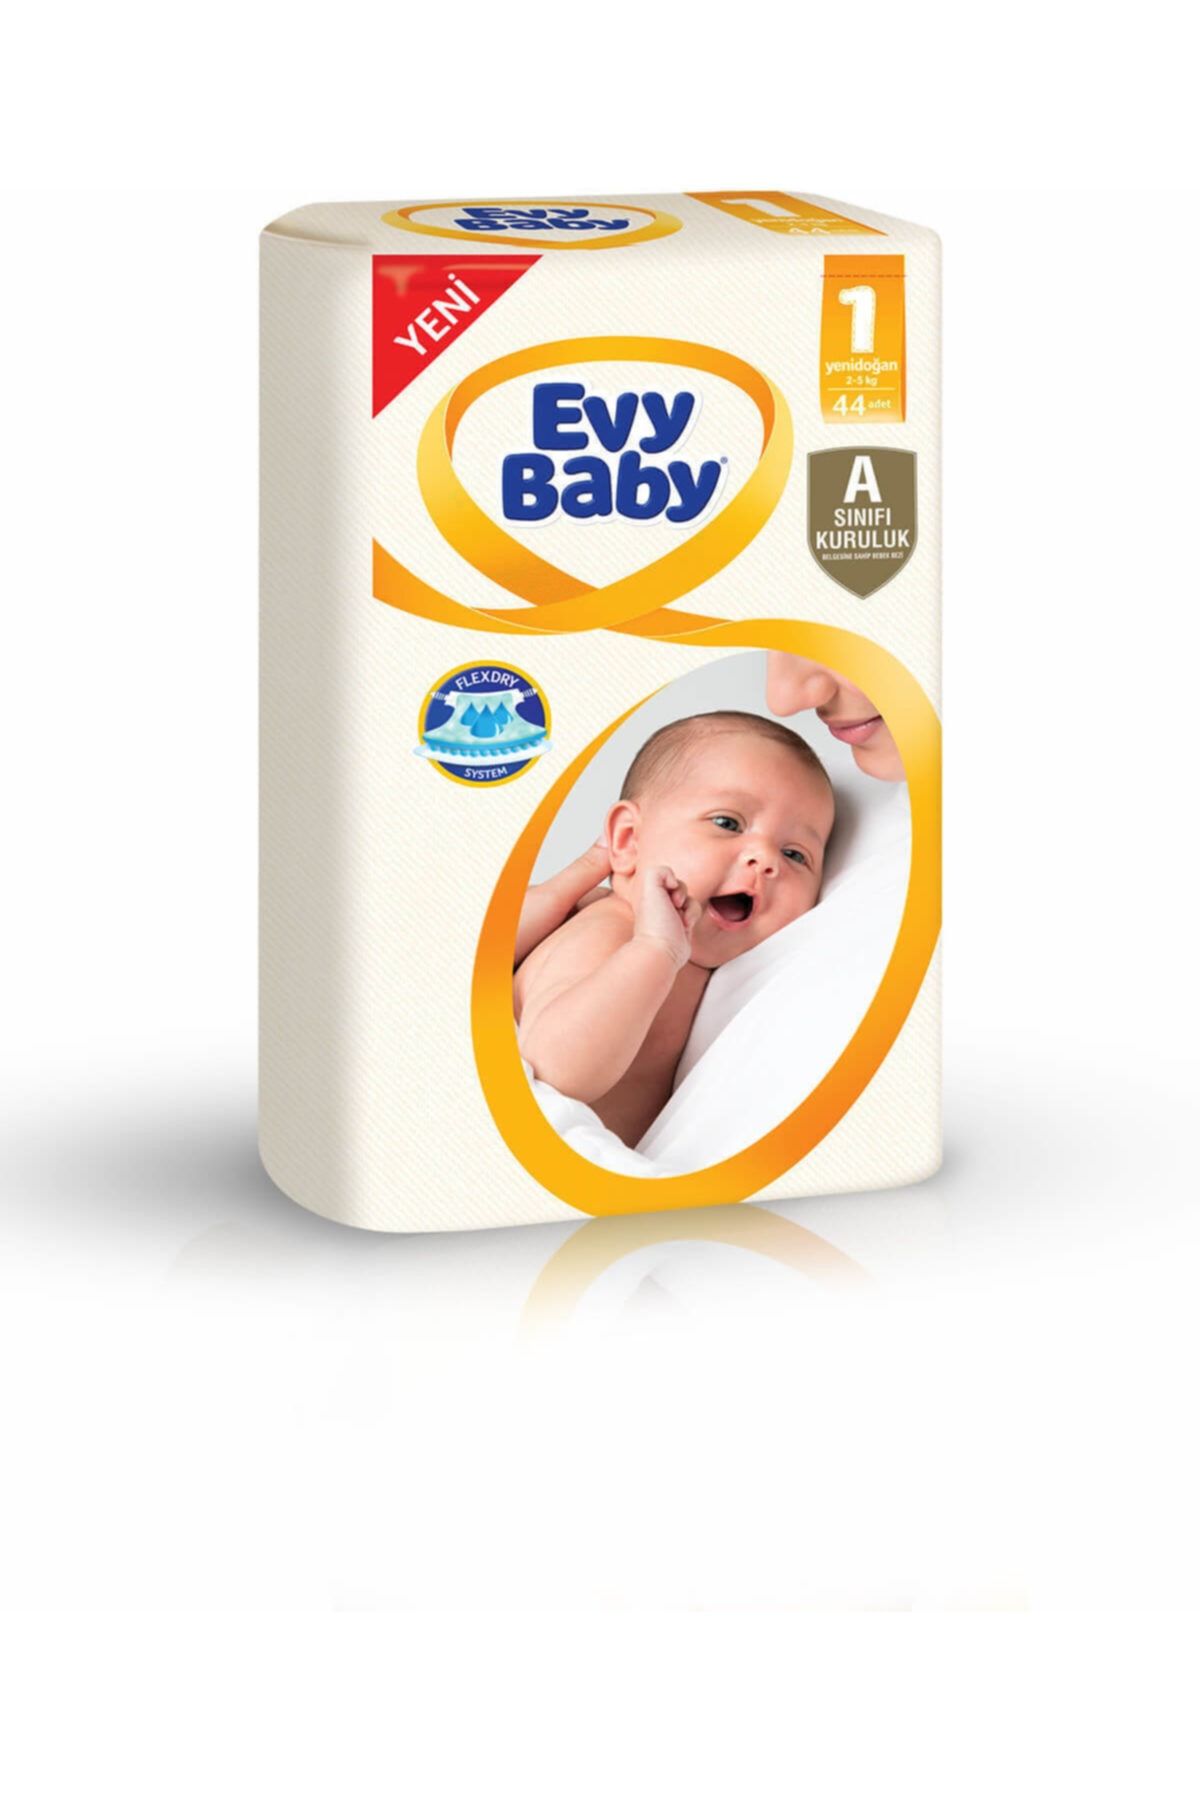 Evy Baby Bebek Bezi Jumbo Yenidoğan 1 Beden 44 Lü